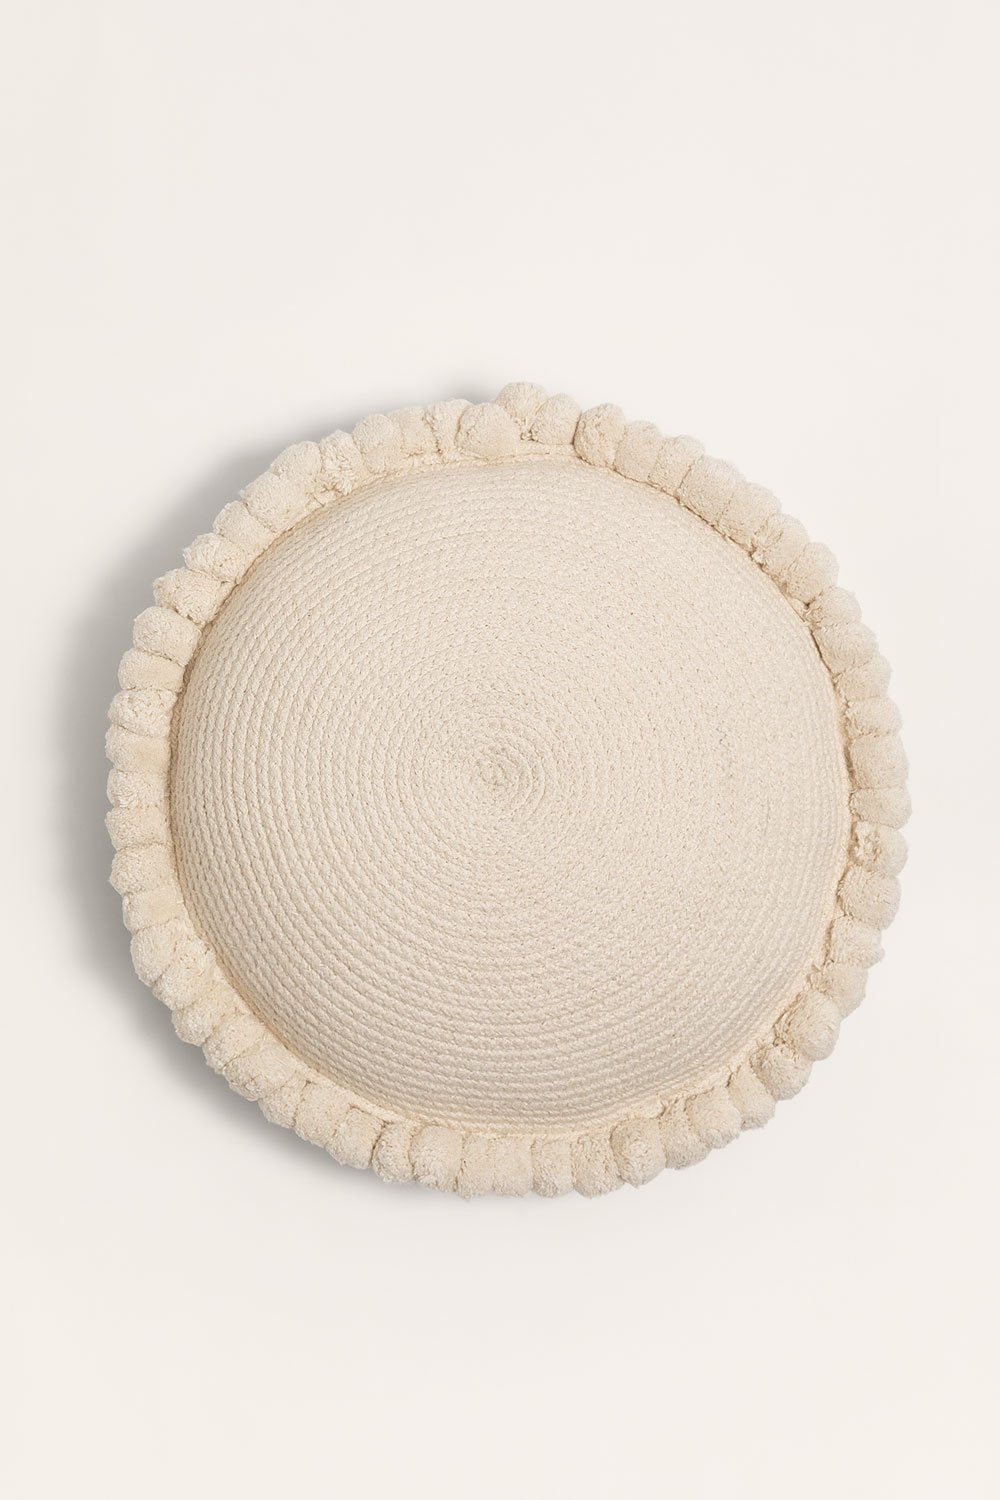 Almofada redonda de algodão trançado Olets, imagem de galeria 1